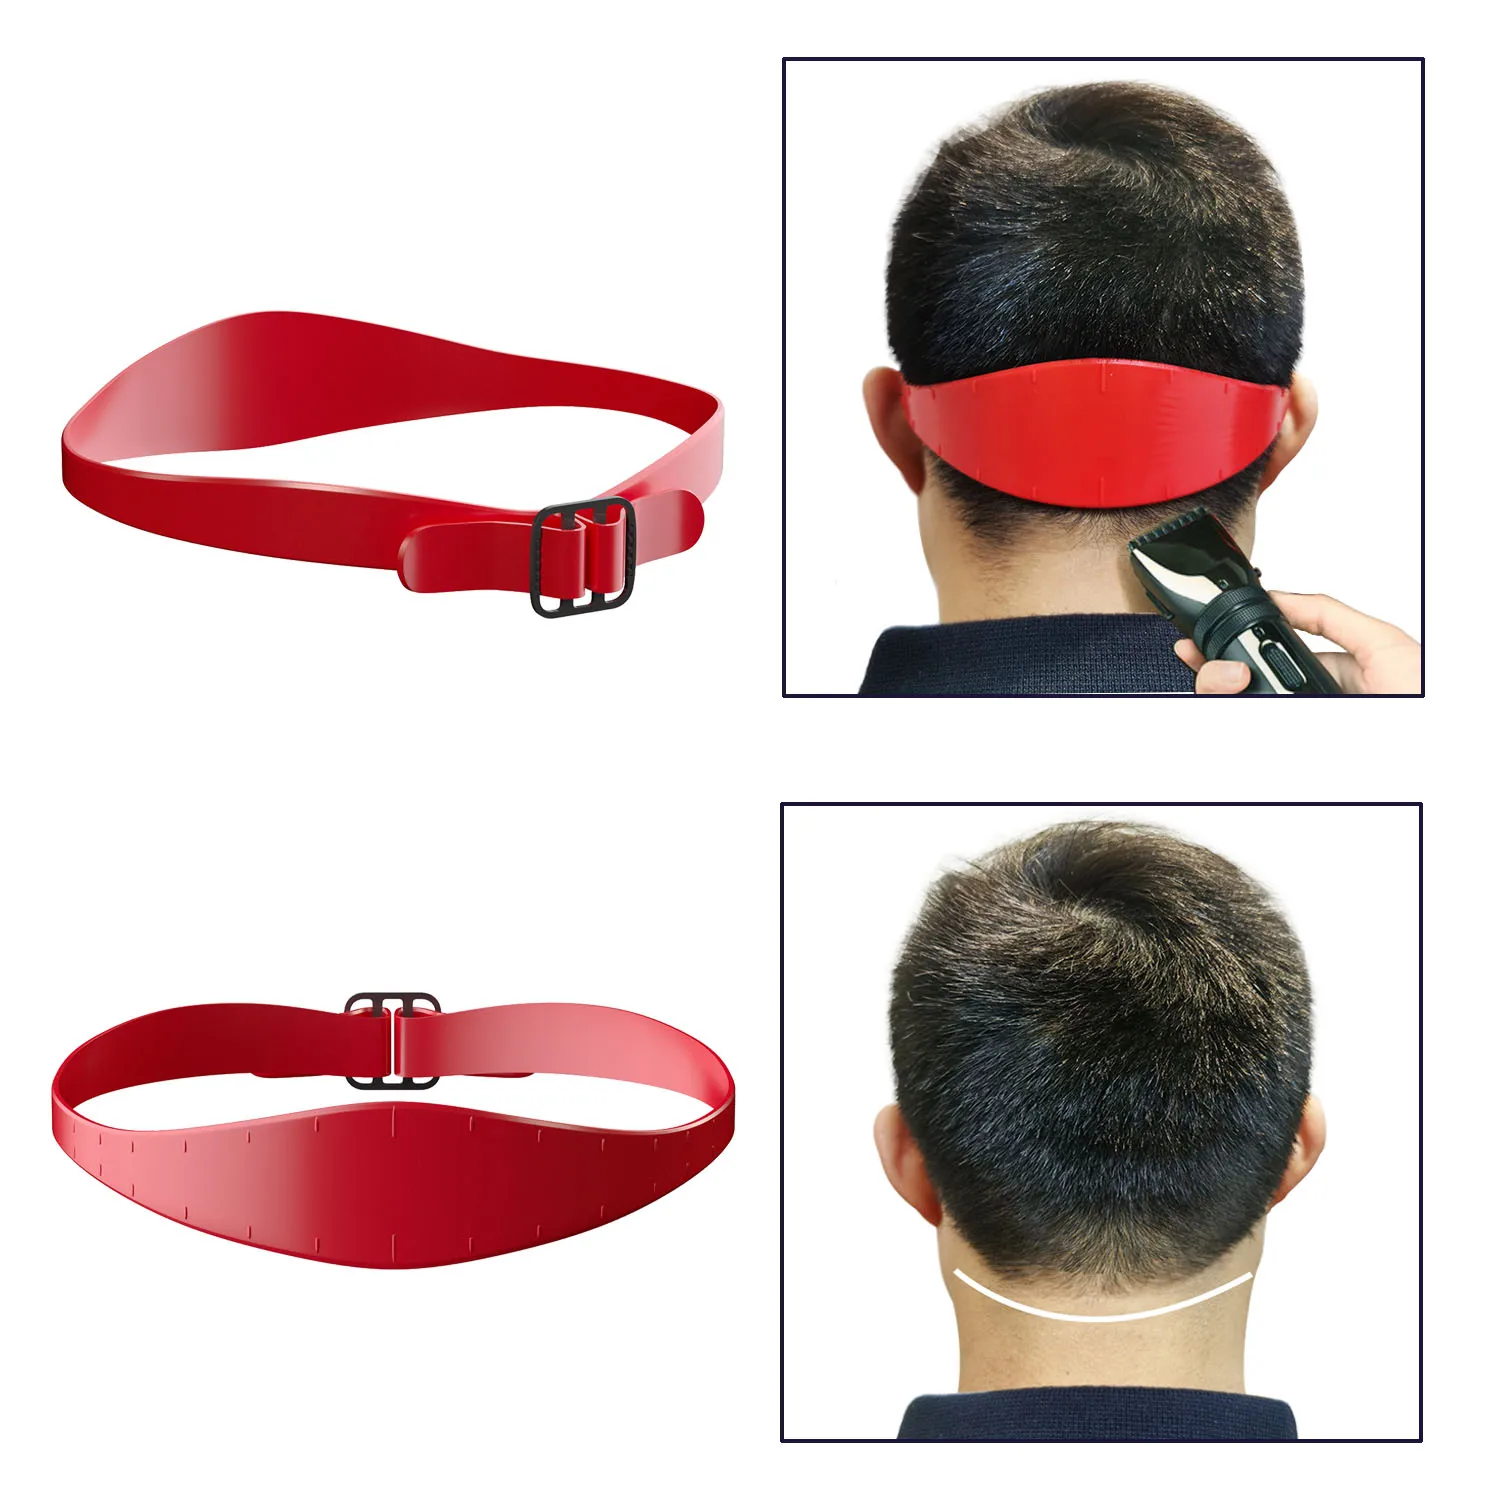 

Линейка для стрижки волос для мужчин устройство для придания формы шеи стайлер линейка парикмахерский расческа шаблон инструменты для прически